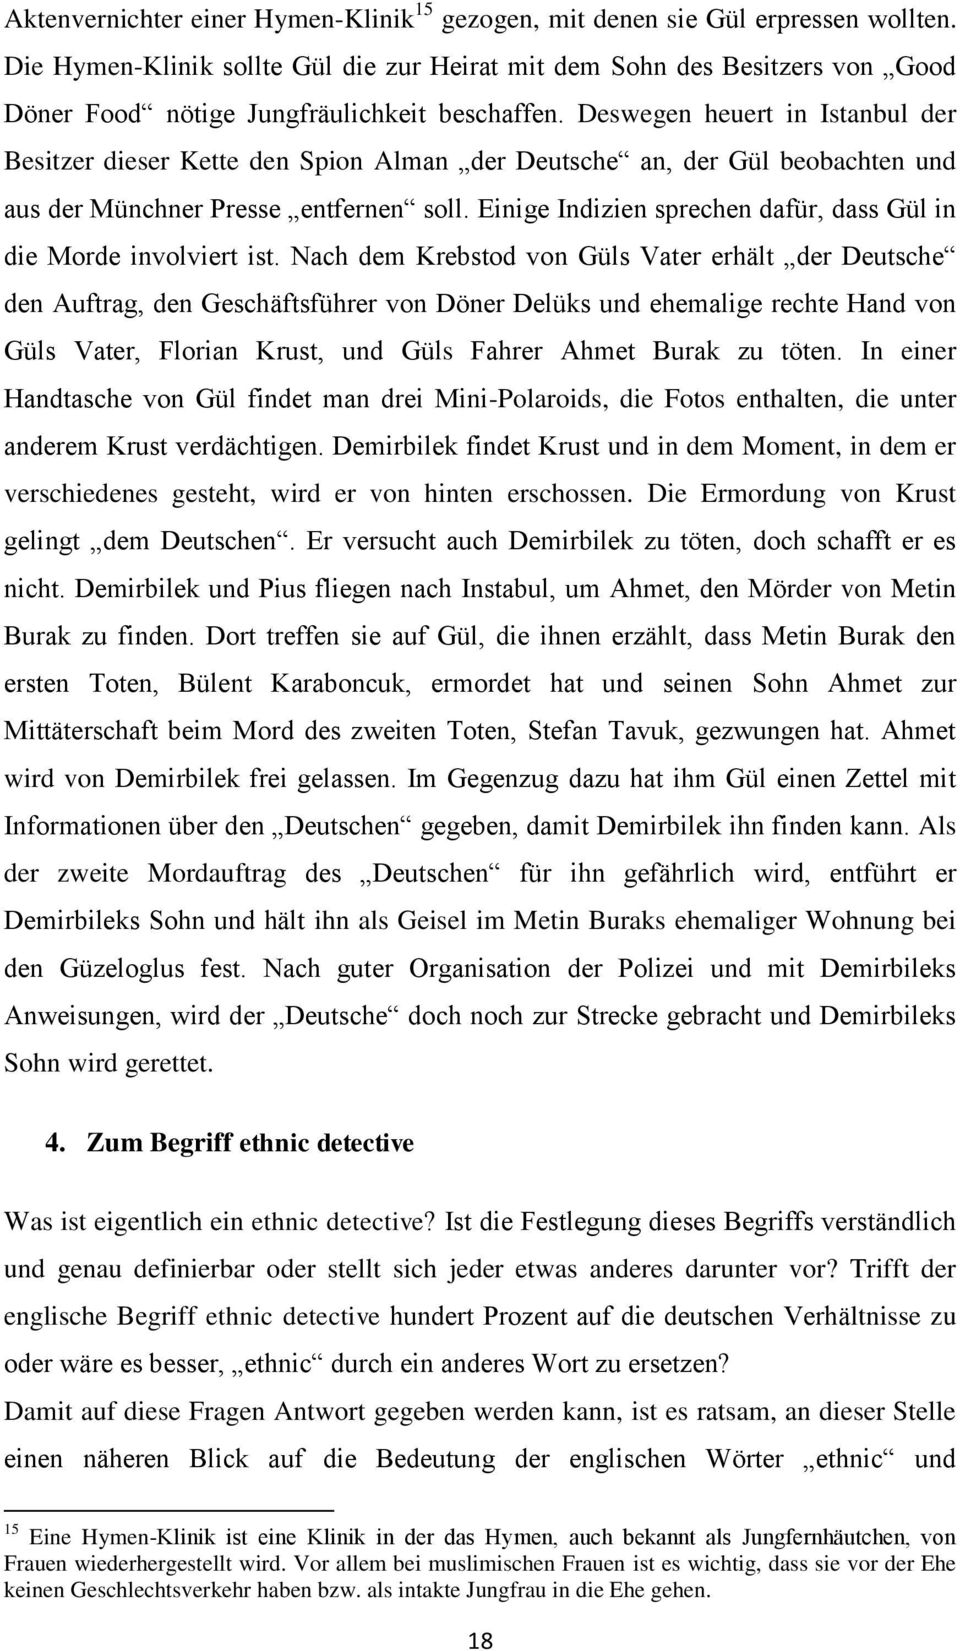 Deswegen heuert in Istanbul der Besitzer dieser Kette den Spion Alman der Deutsche an, der Gül beobachten und aus der Münchner Presse entfernen soll.